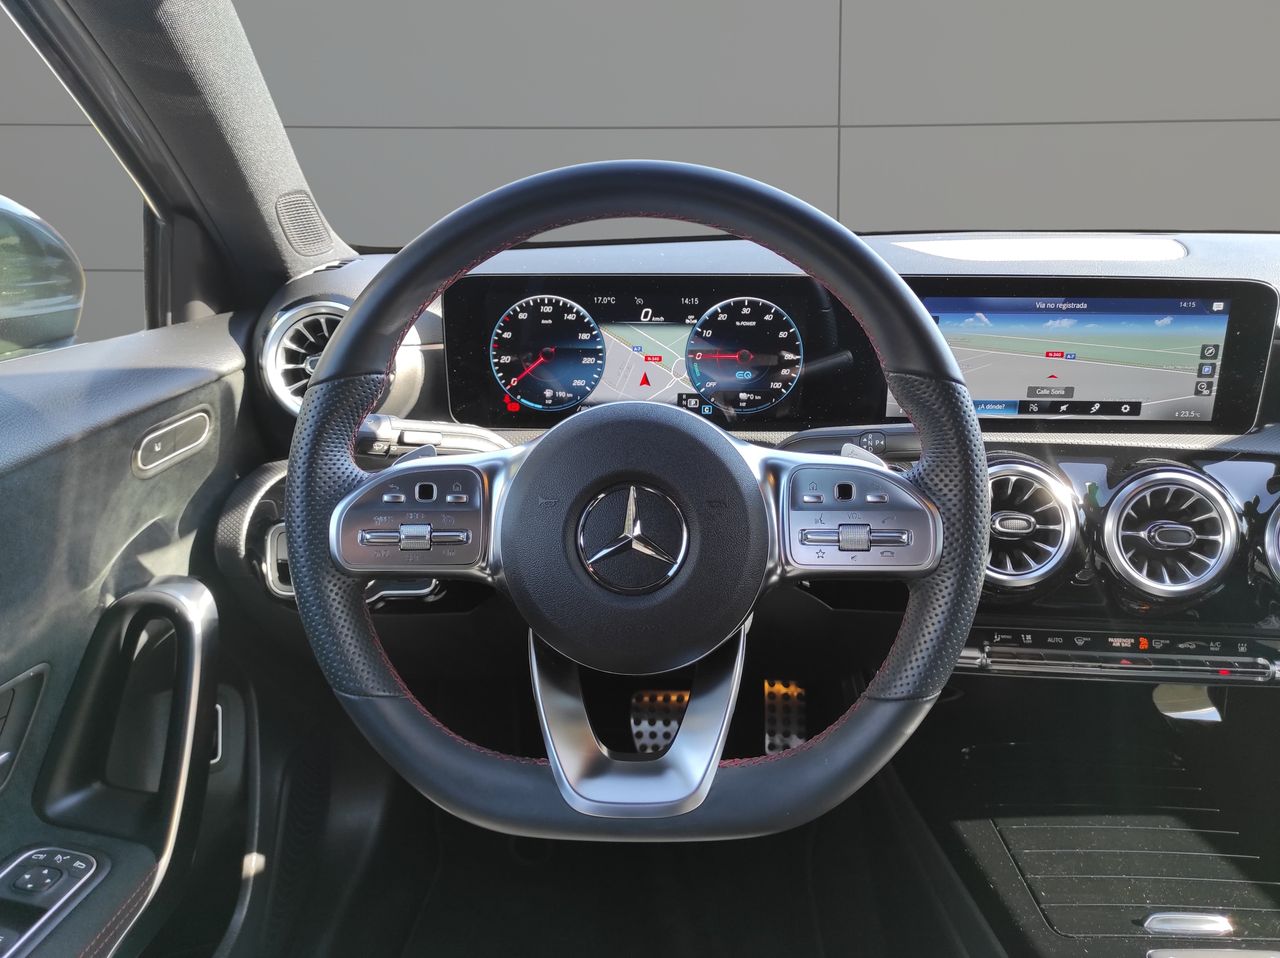 Foto Mercedes-Benz Clase A 12